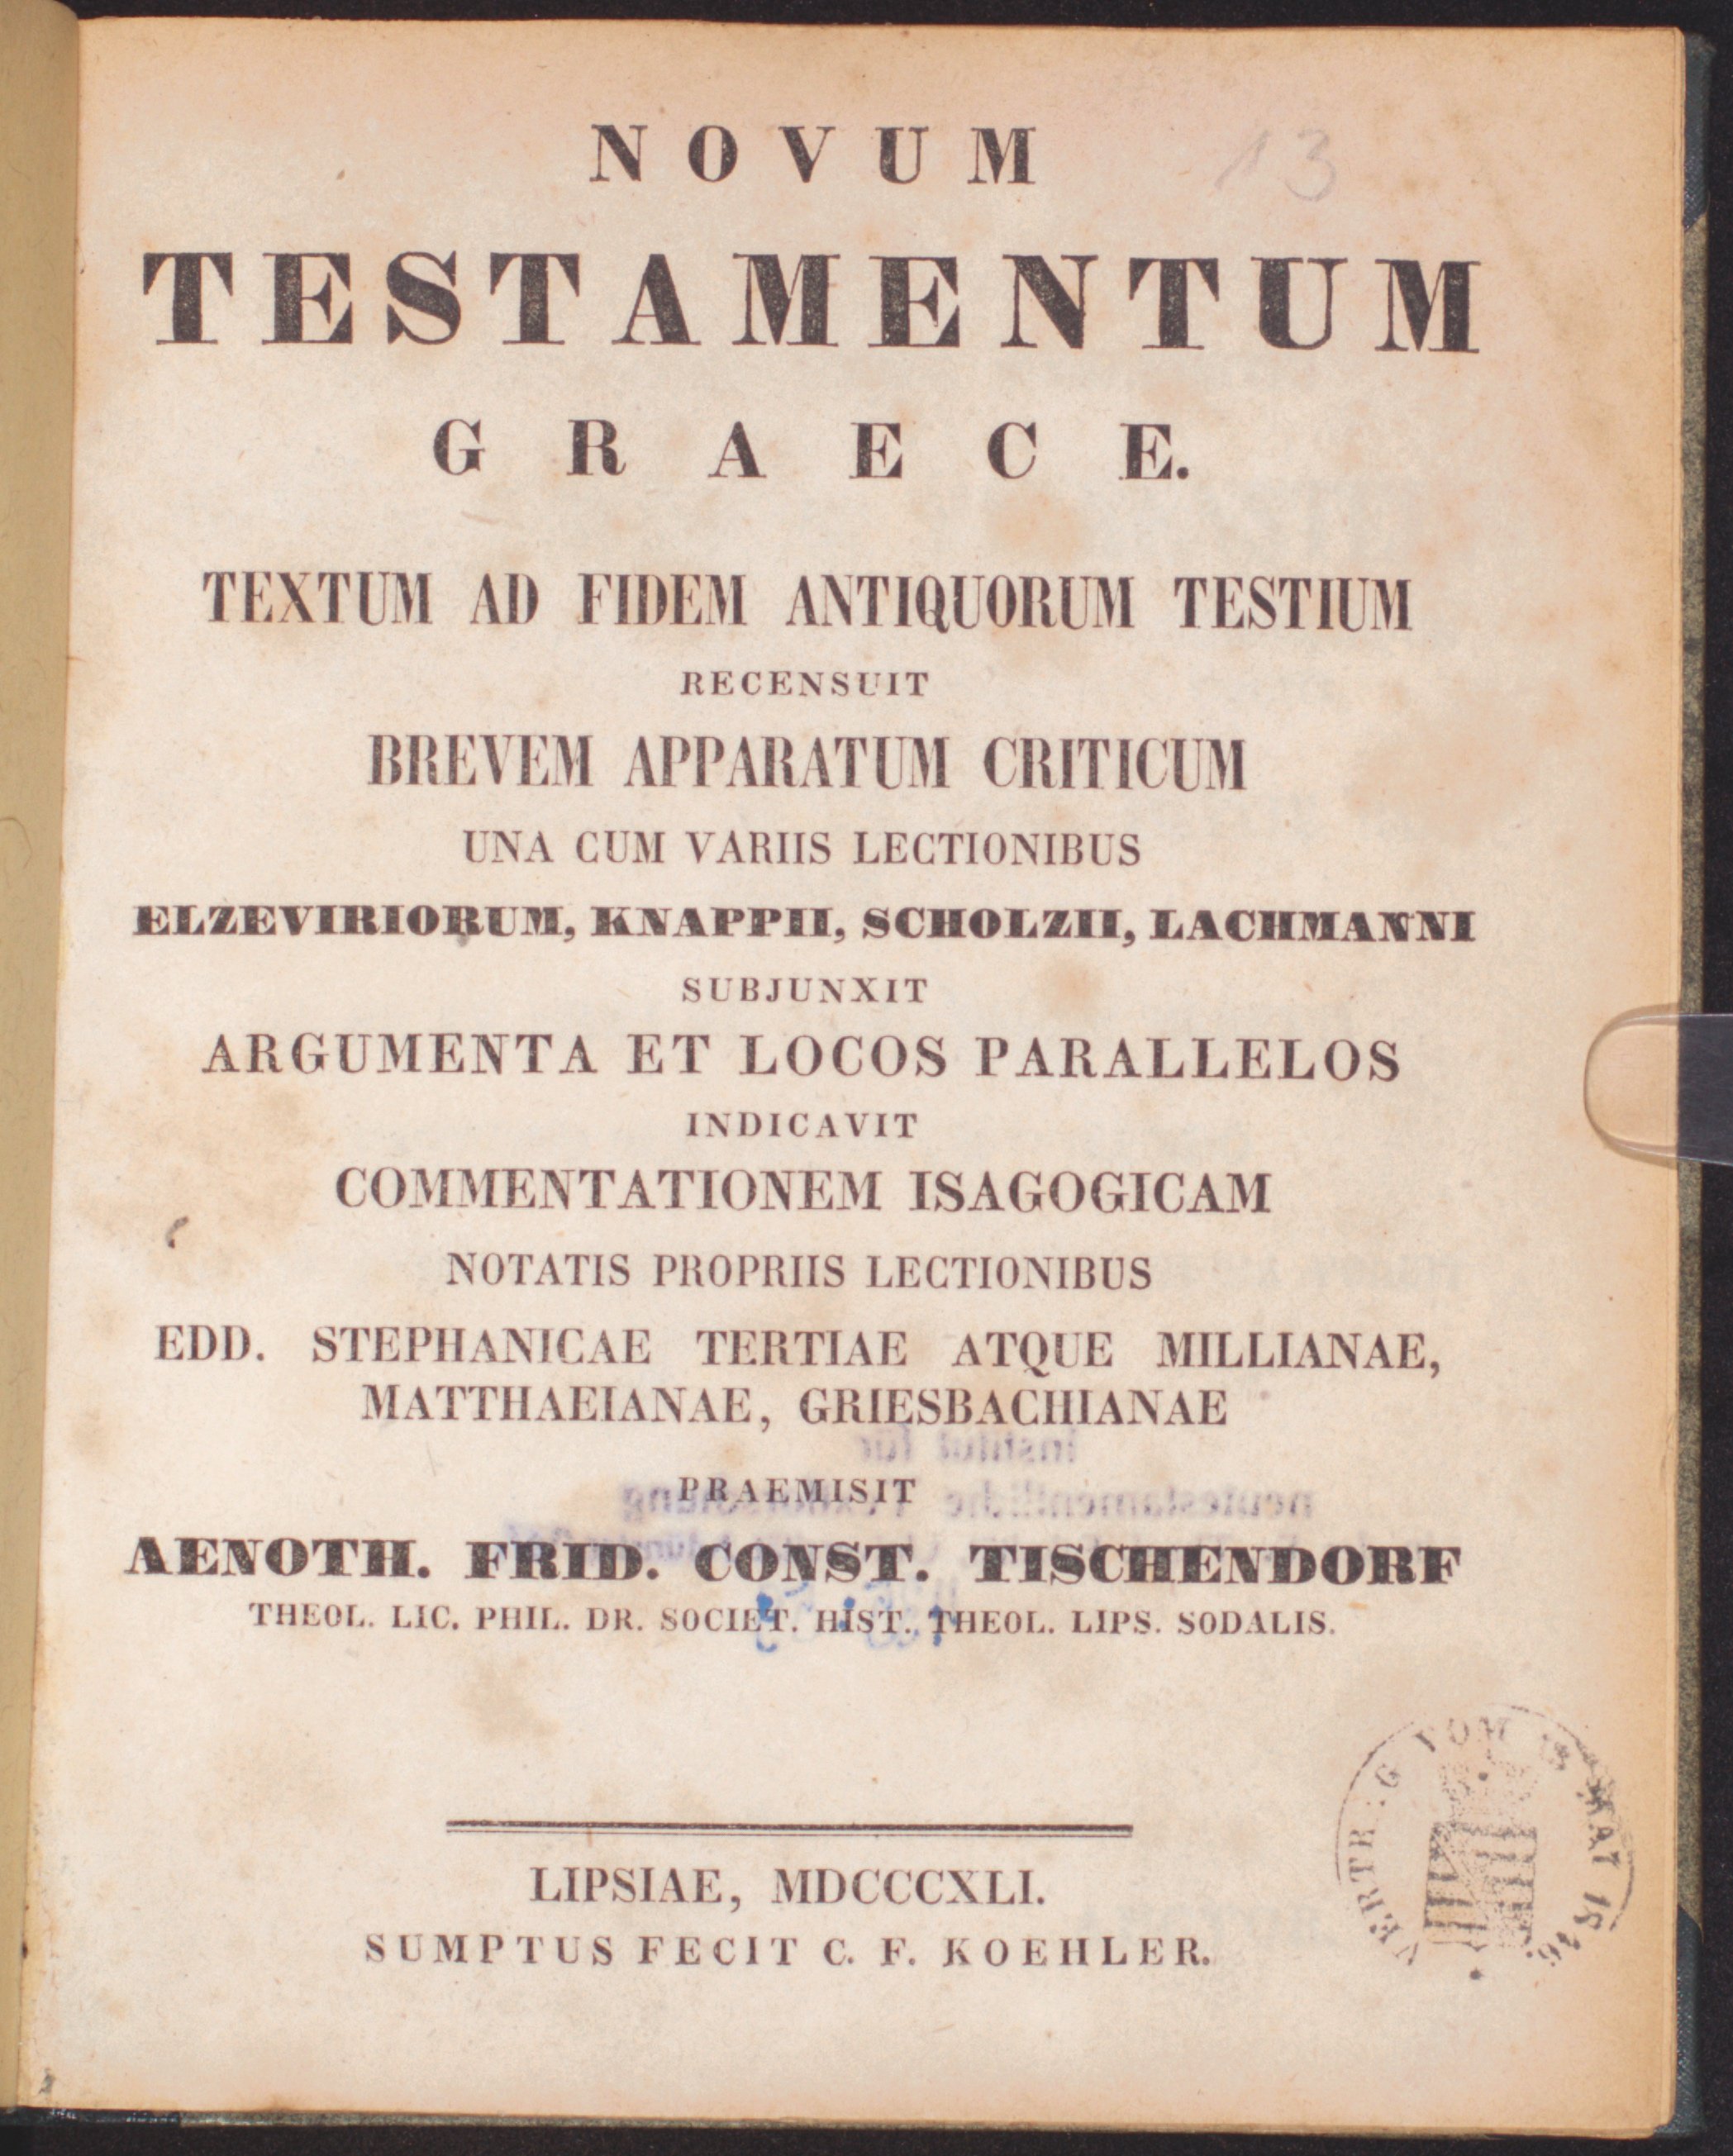 Novum Testamentum Graecum, Tischendorf 1850 (Bibelmuseum der WWU Münster CC BY-NC-SA)